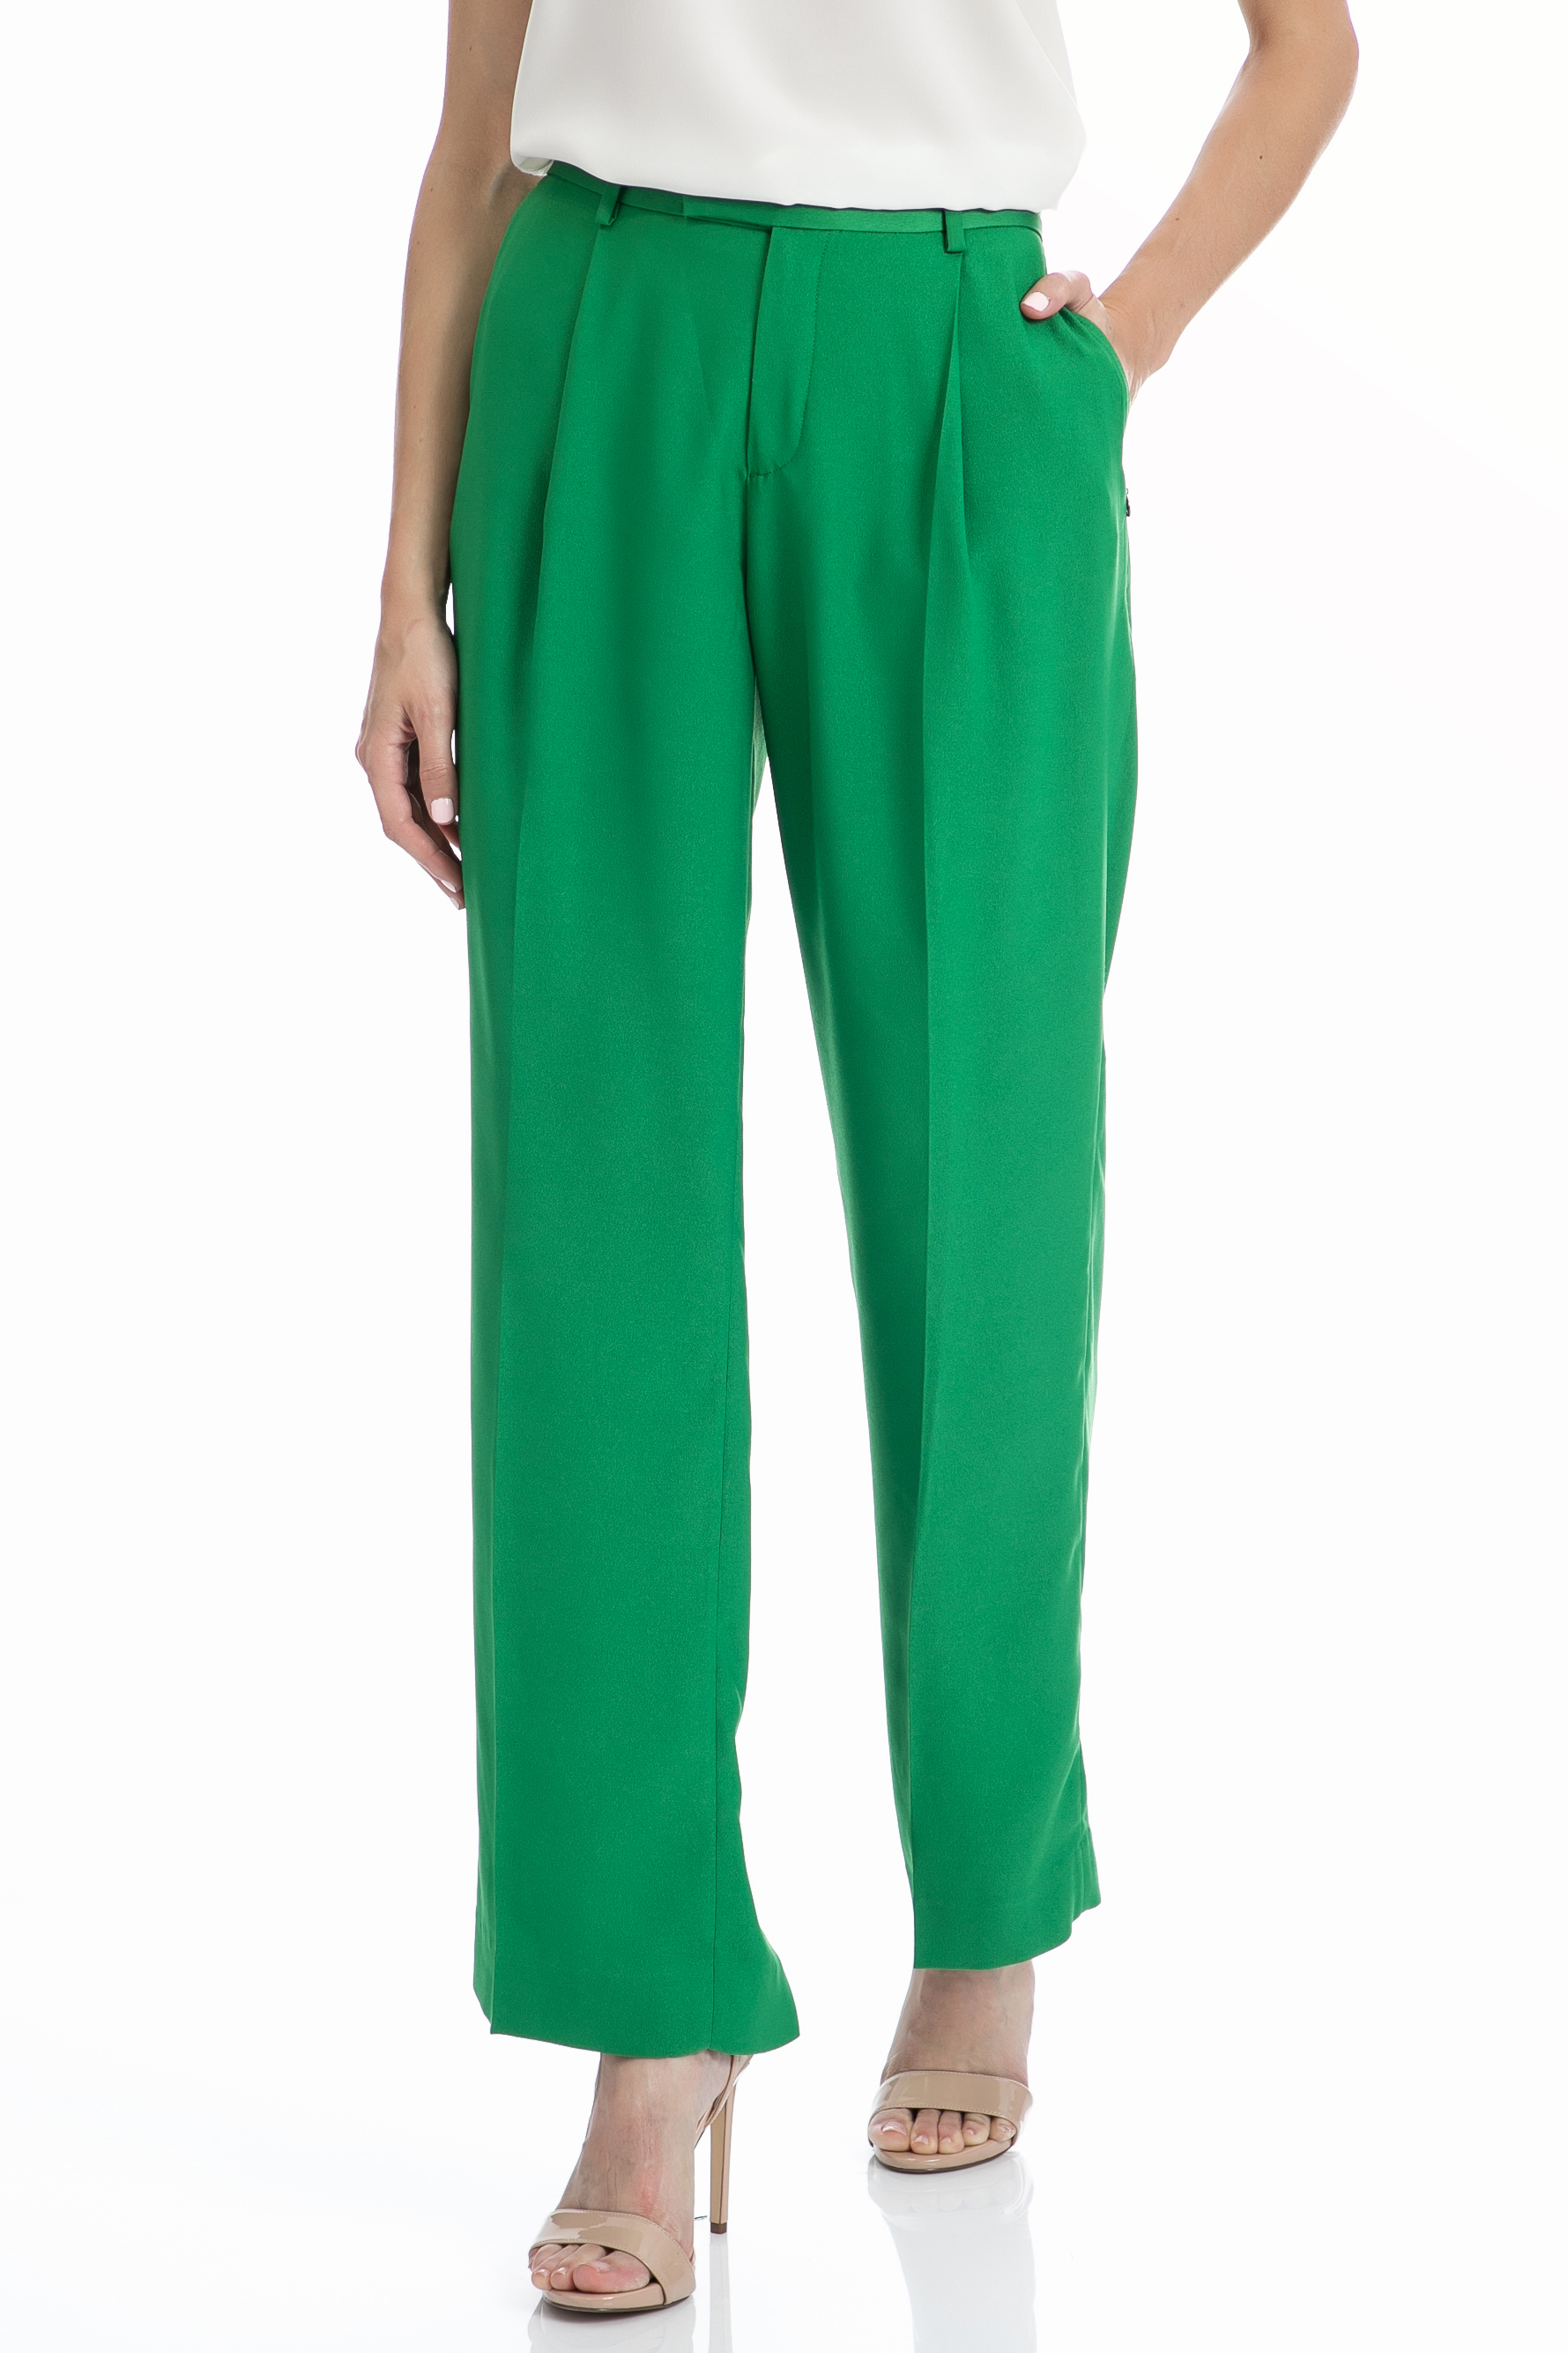 Γυναικεία/Ρούχα/Παντελόνια/Παντελόνες SCOTCH & SODA - Γυναικεία παντελόνα SCOTCH & SODA Drapey πράσινη